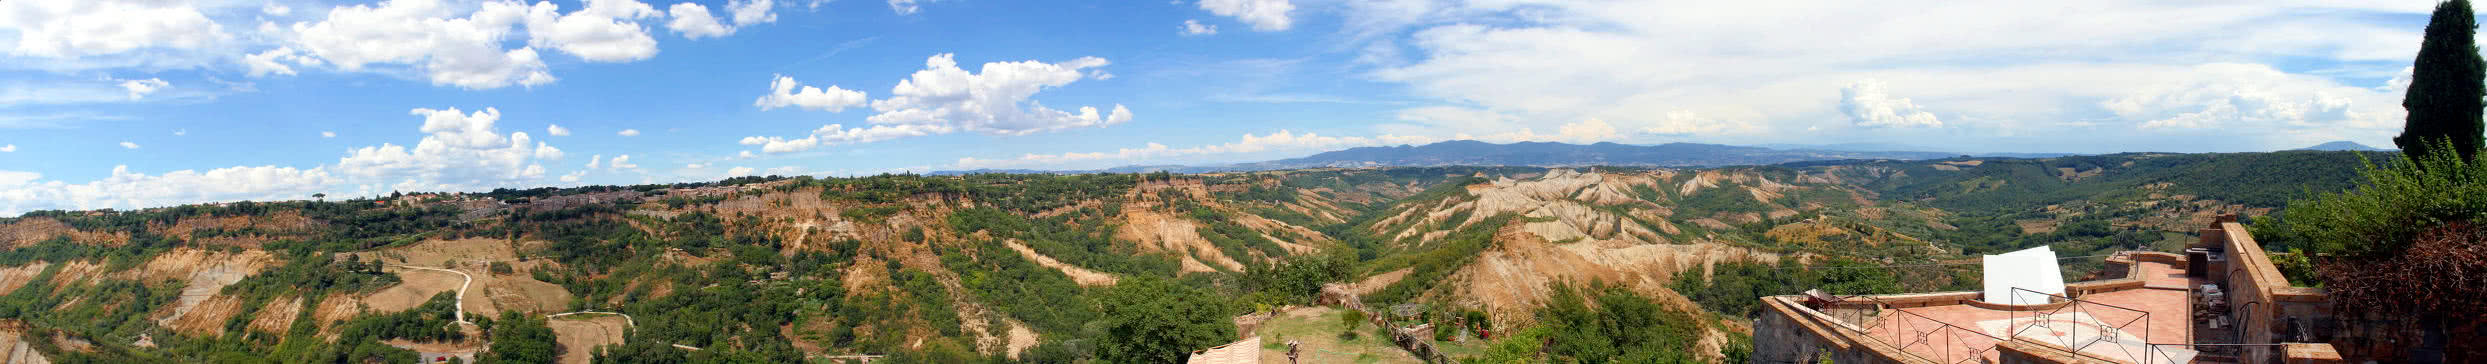 Panoramablick von Civita di Bagnoregio auf die umgebenden Dörfer 